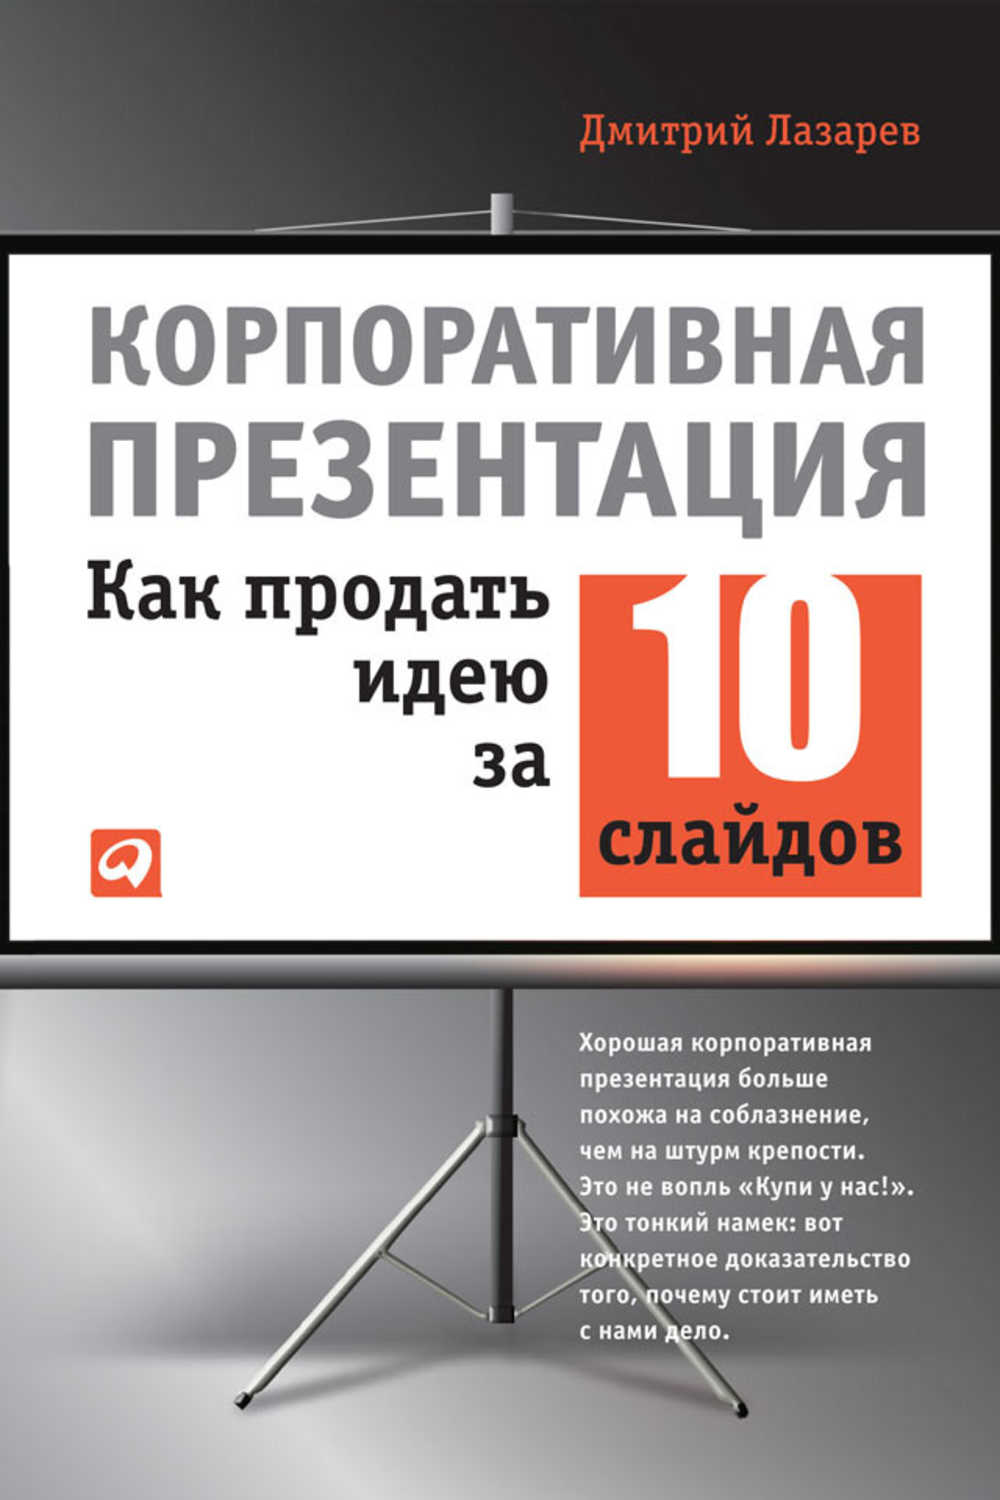 Лазарев Дмитрий - «Корпоративная презентация: Как продать идею за 10 слайдов»